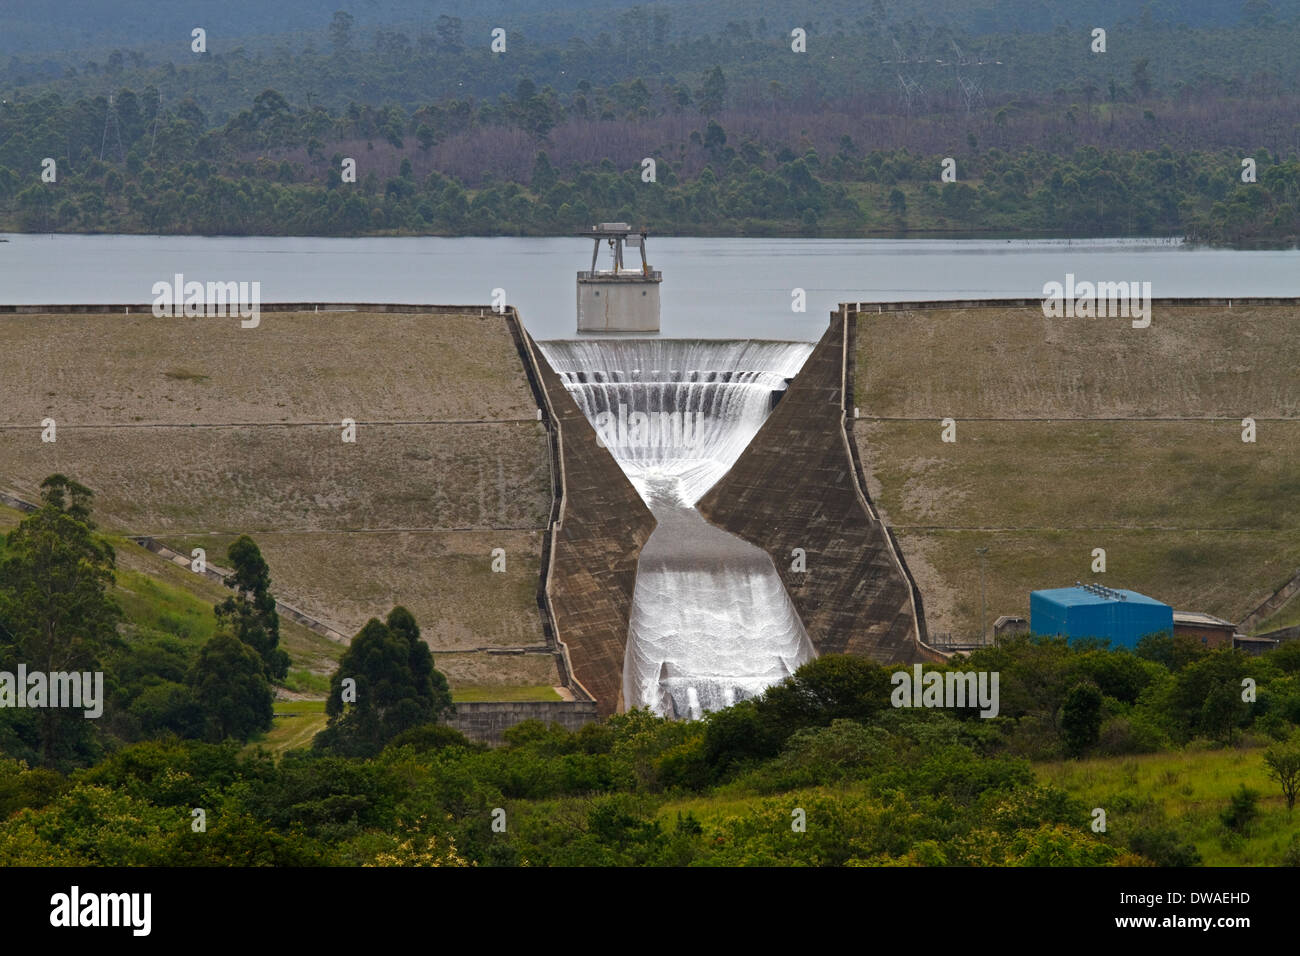 Injaka Dam, Inyaka Dam ist künstlich aufgestauten See ab 2002 auf der Marite River, in der Nähe von Hazyview, Mpumalanga Südafrika Stockfoto